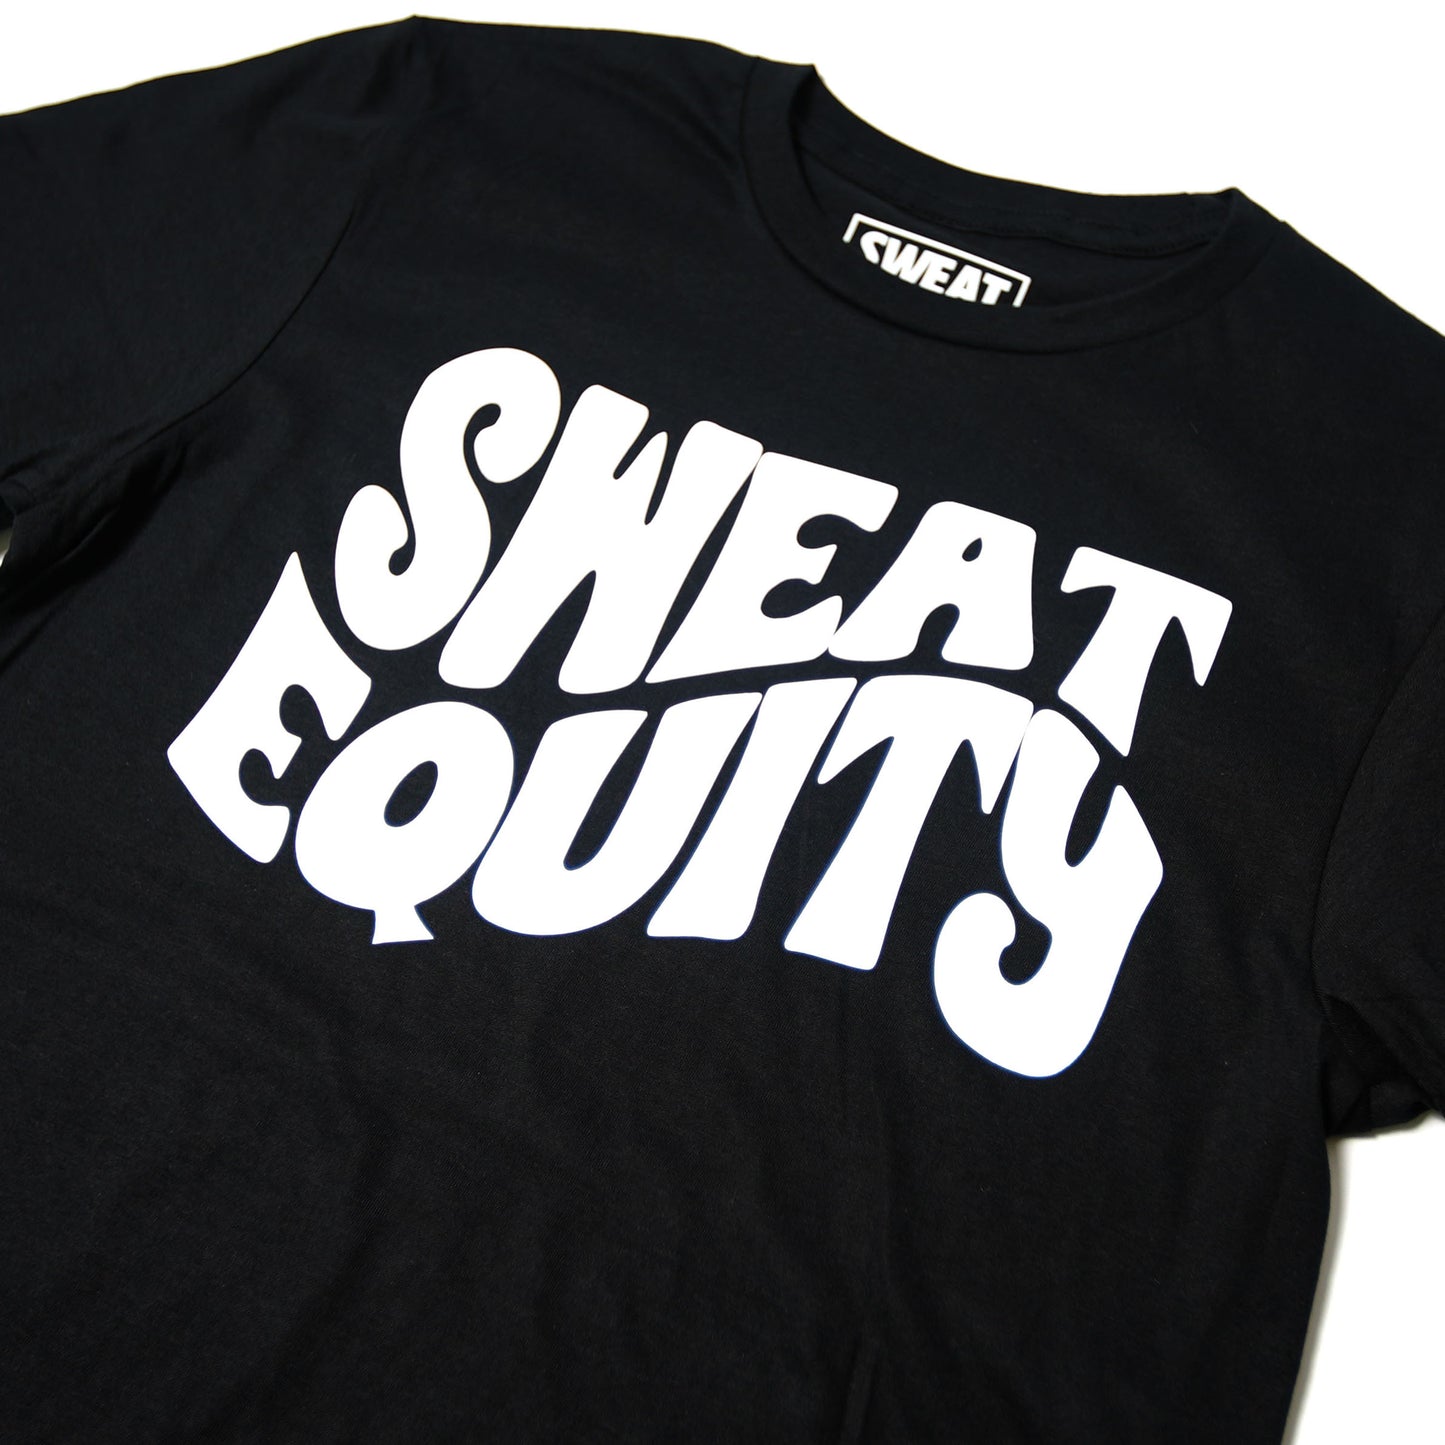 Sweat Equity Bubble T-Shirt